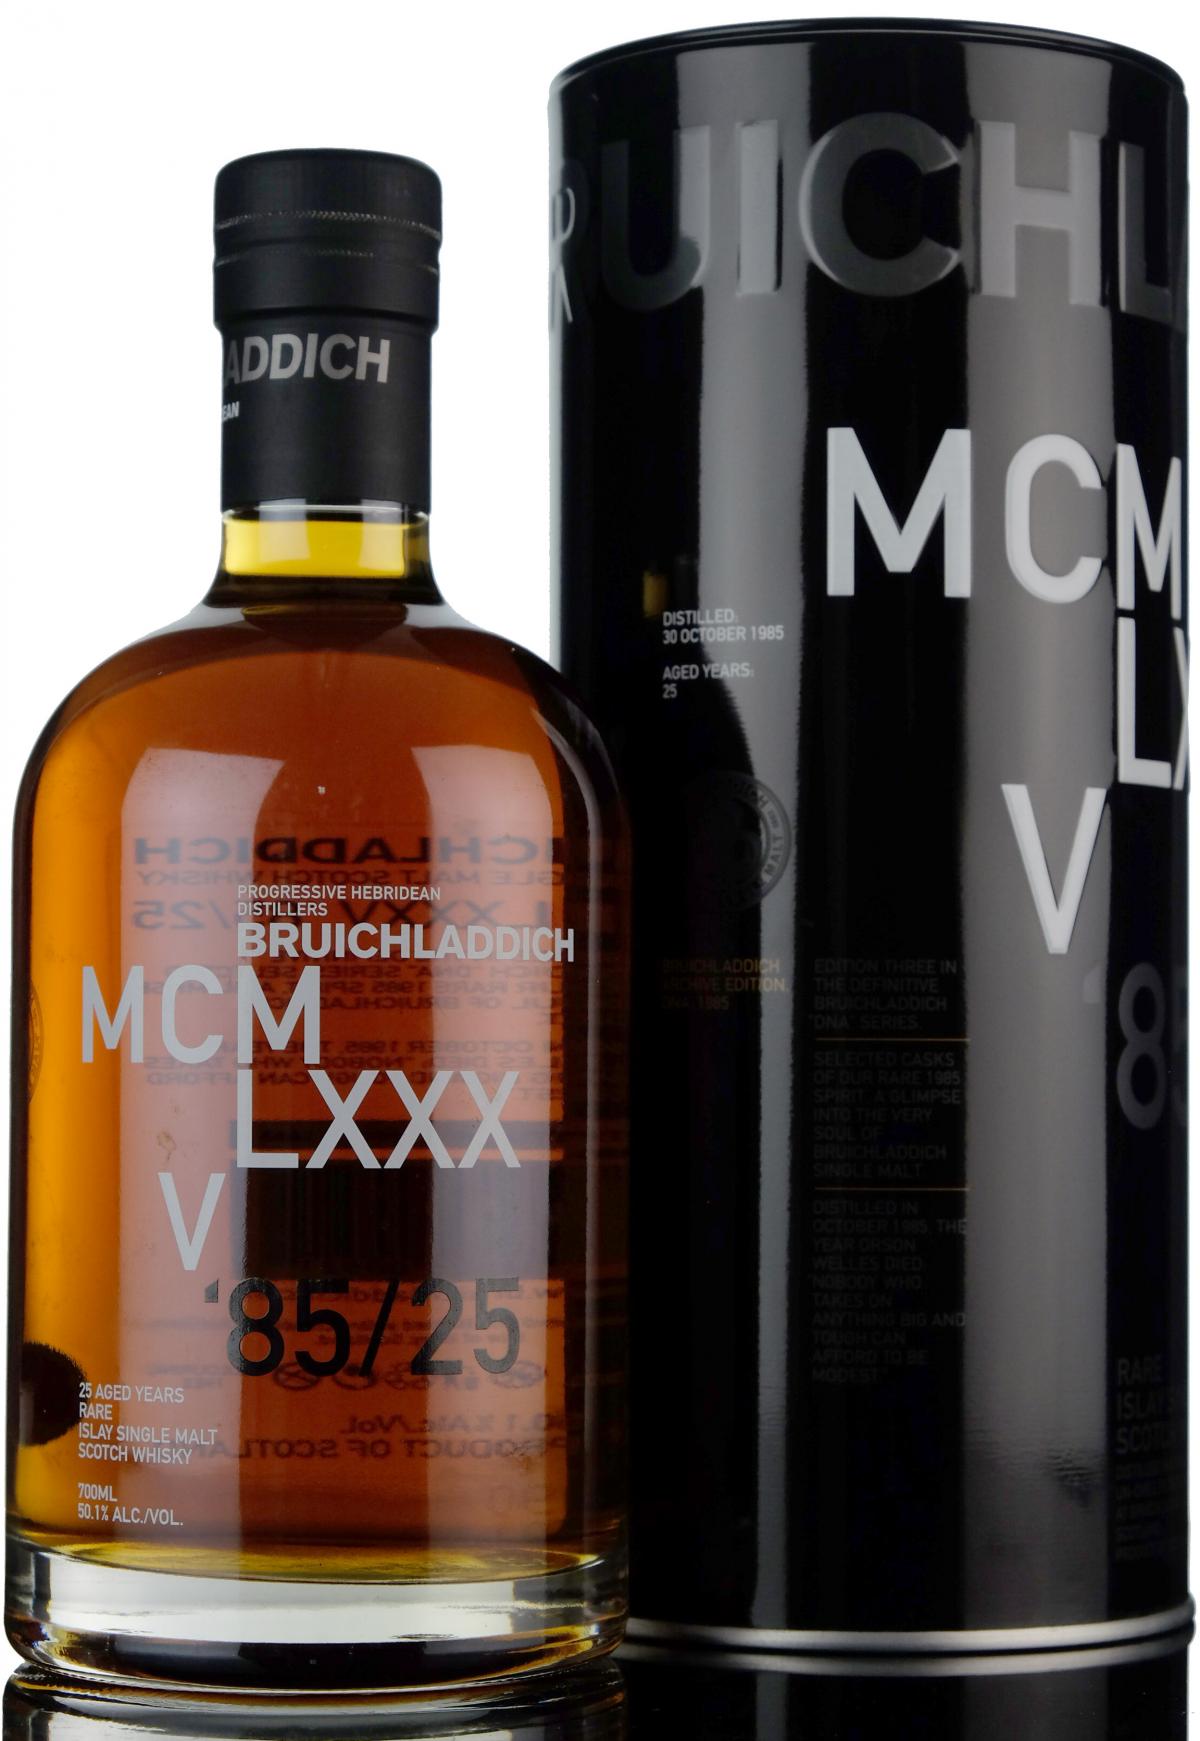 Bruichladdich MCM LXXX V 1985 - 25 Year Old